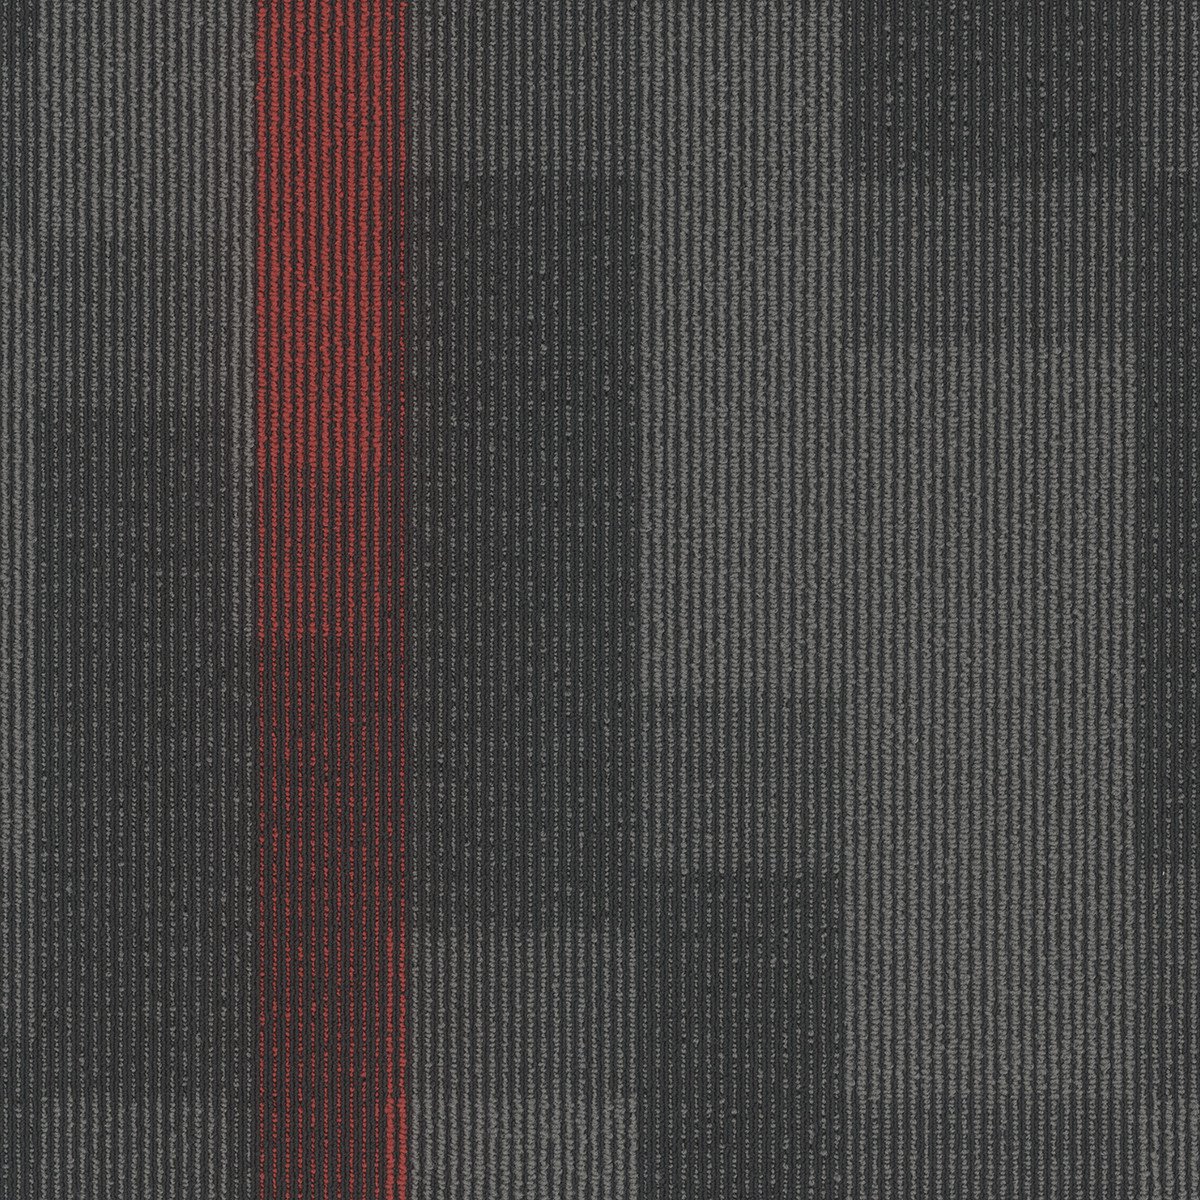 Pentz Magnify Carpet Tile Chili Red 24" x 24" Premium (72 sq ft/ctn)